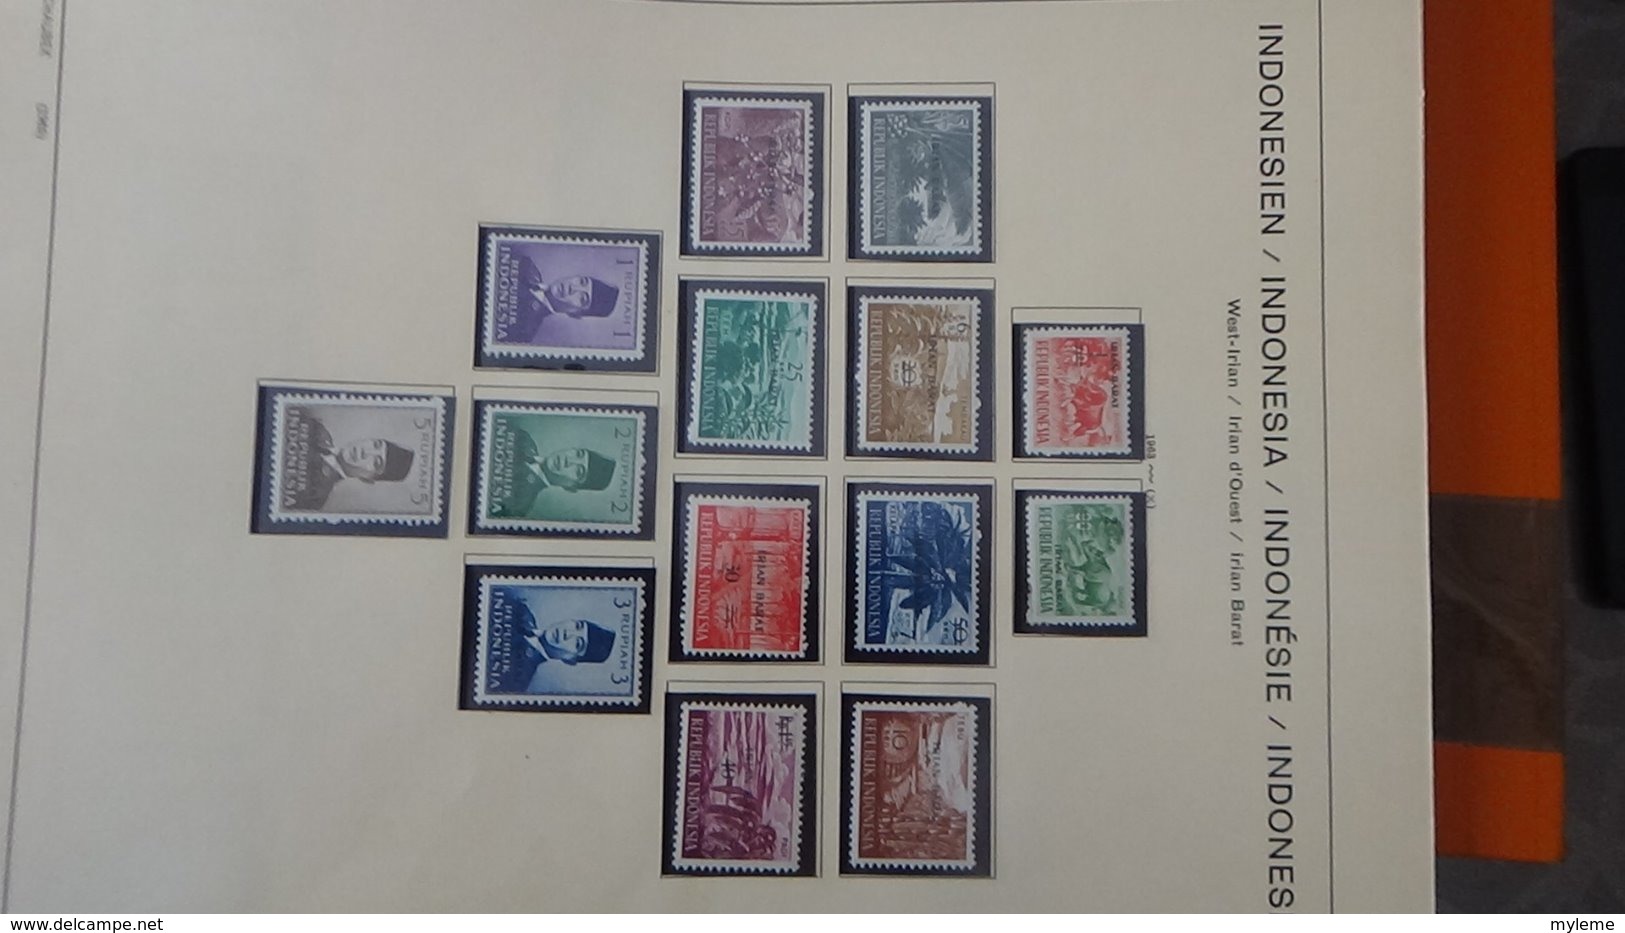 Collection timbres d'INDONESIE Idéal pour thématiques A saisir !!!